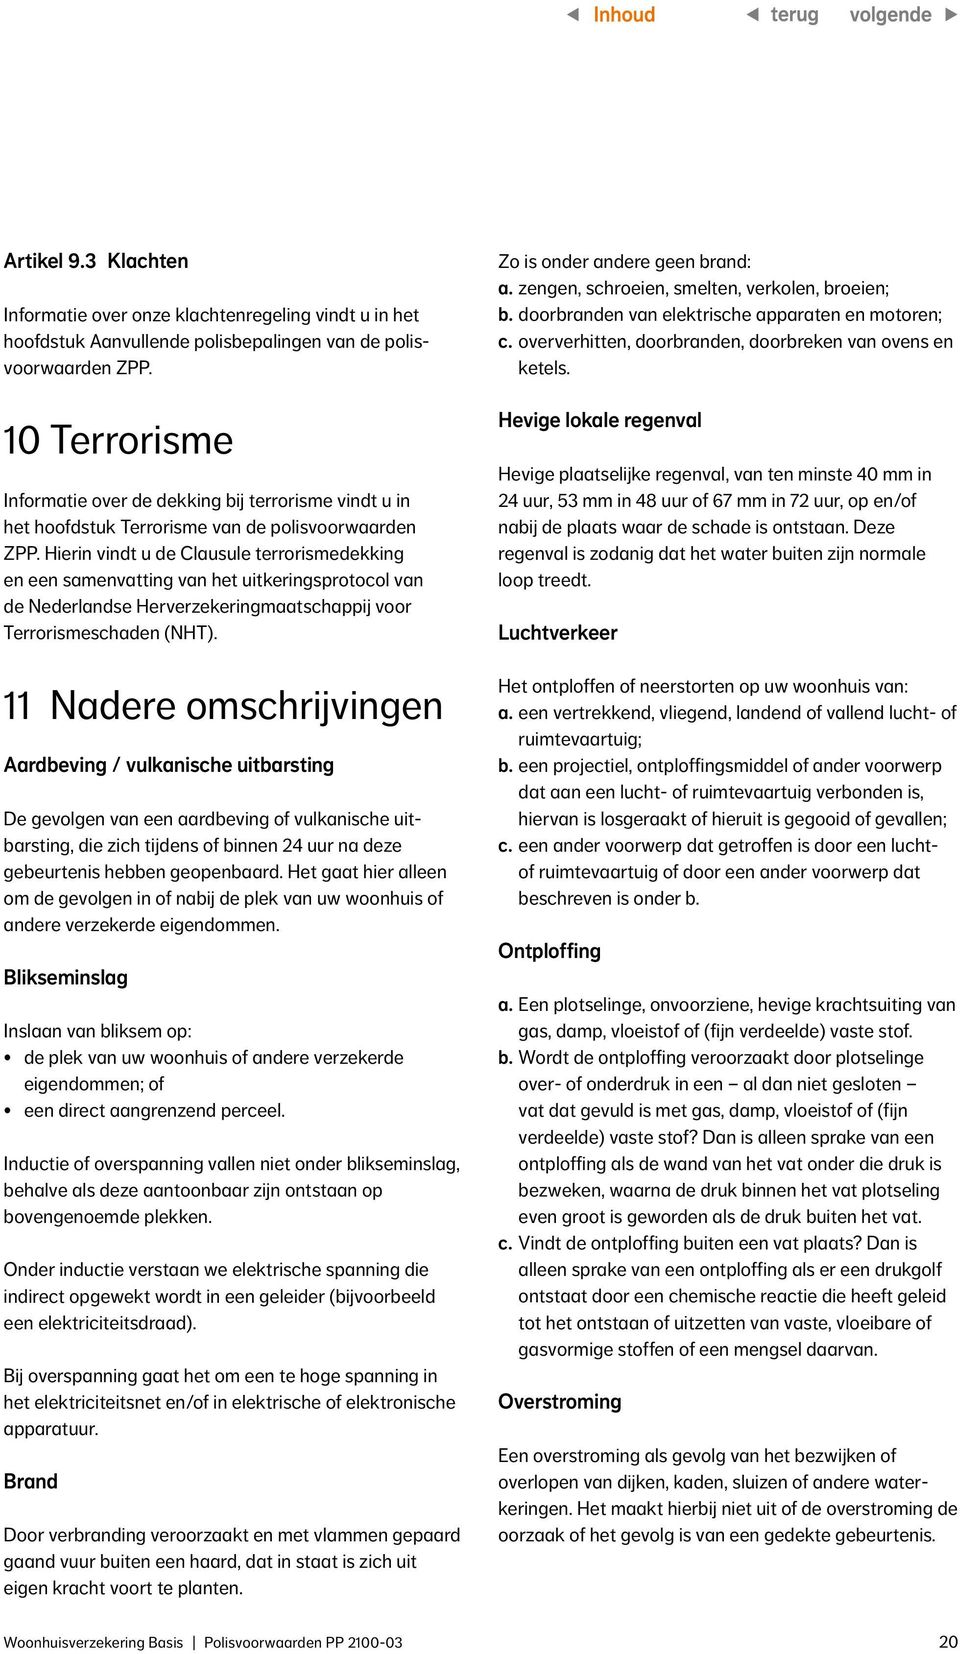 Hierin vindt u de Clausule terrorismedekking en een samenvatting van het uitkeringsprotocol van de Nederlandse Herverzekeringmaatschappij voor Terrorismeschaden (NHT).